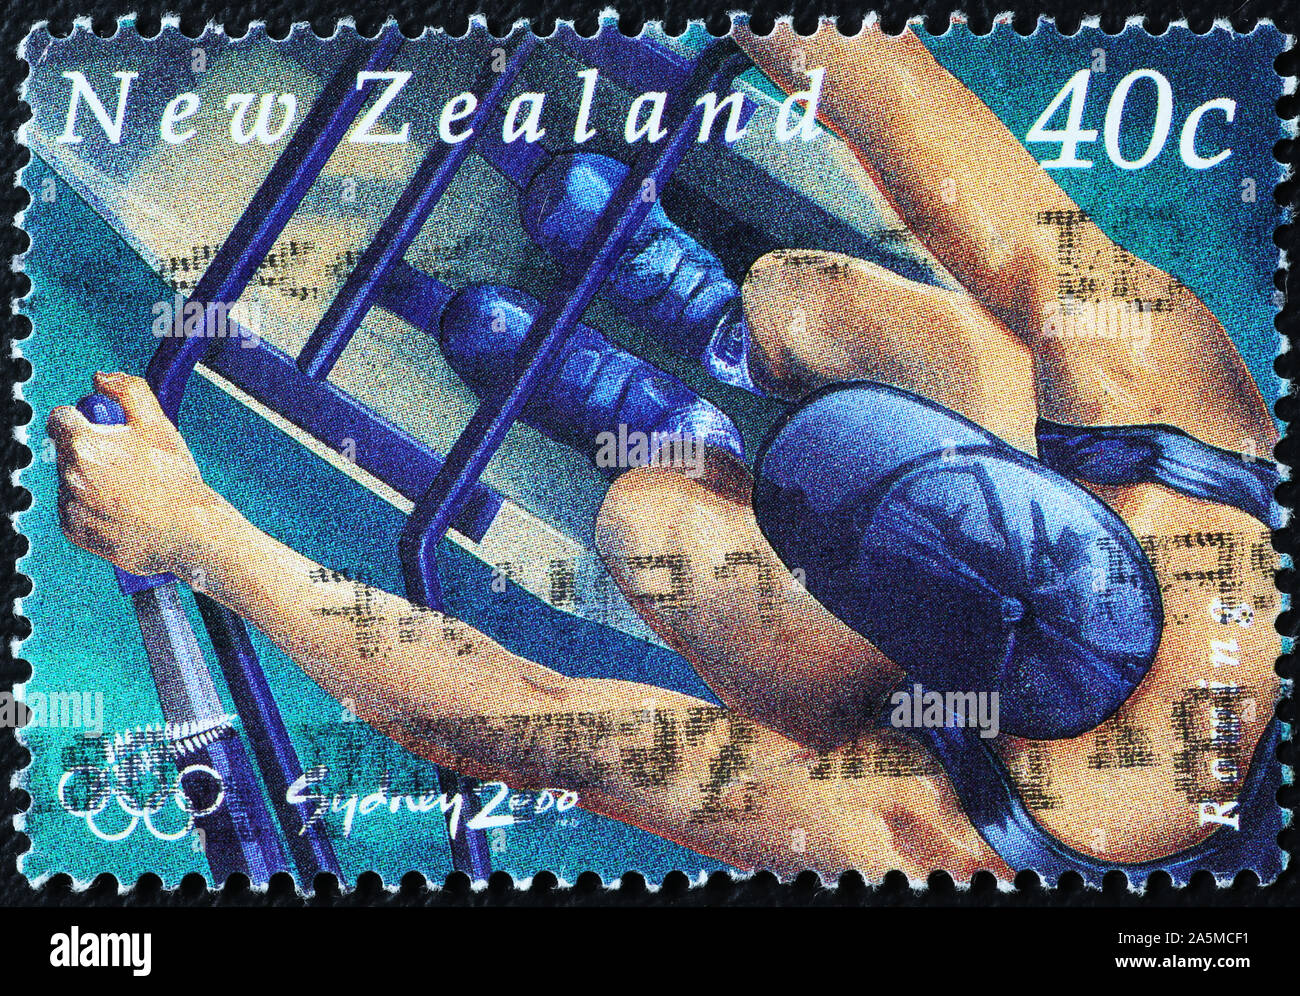 Rudergerät von oben auf Neuseeland Briefmarke gesehen Stockfoto